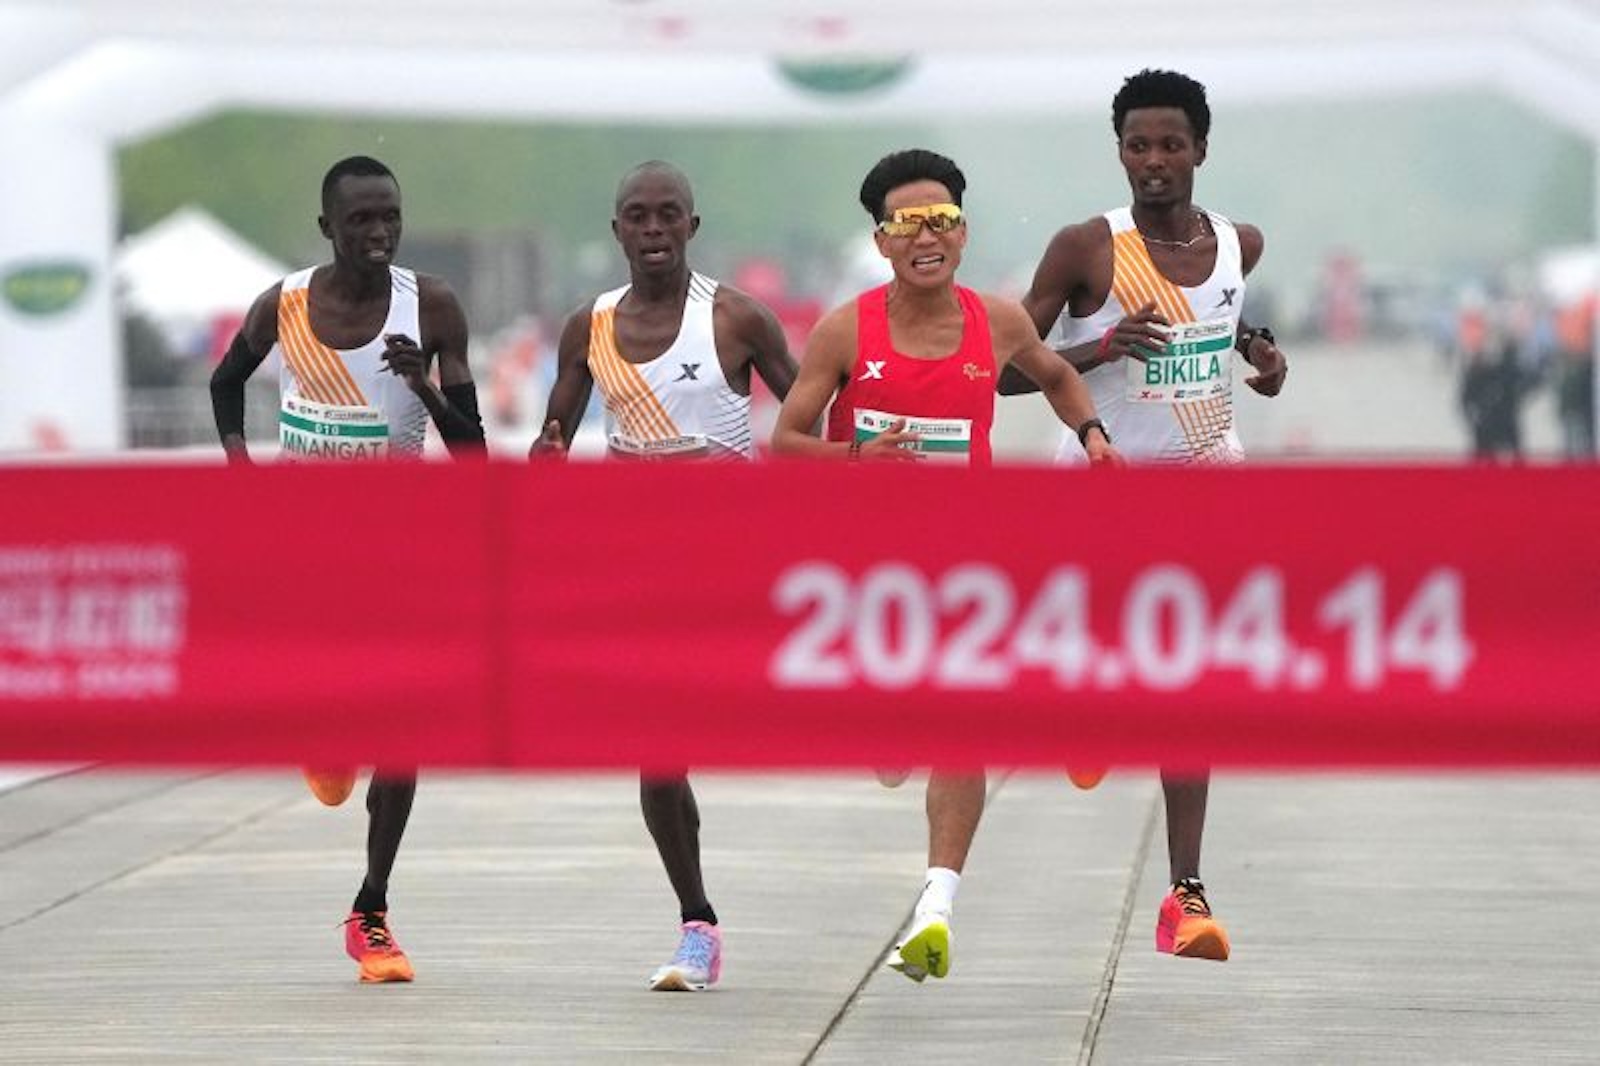 la-victoria-de-un-corredor-chino-en-la-media-maraton-de-beijing-deja-la-sospecha-de-que-sus-rivales-parecieran-dejarlo-ganar